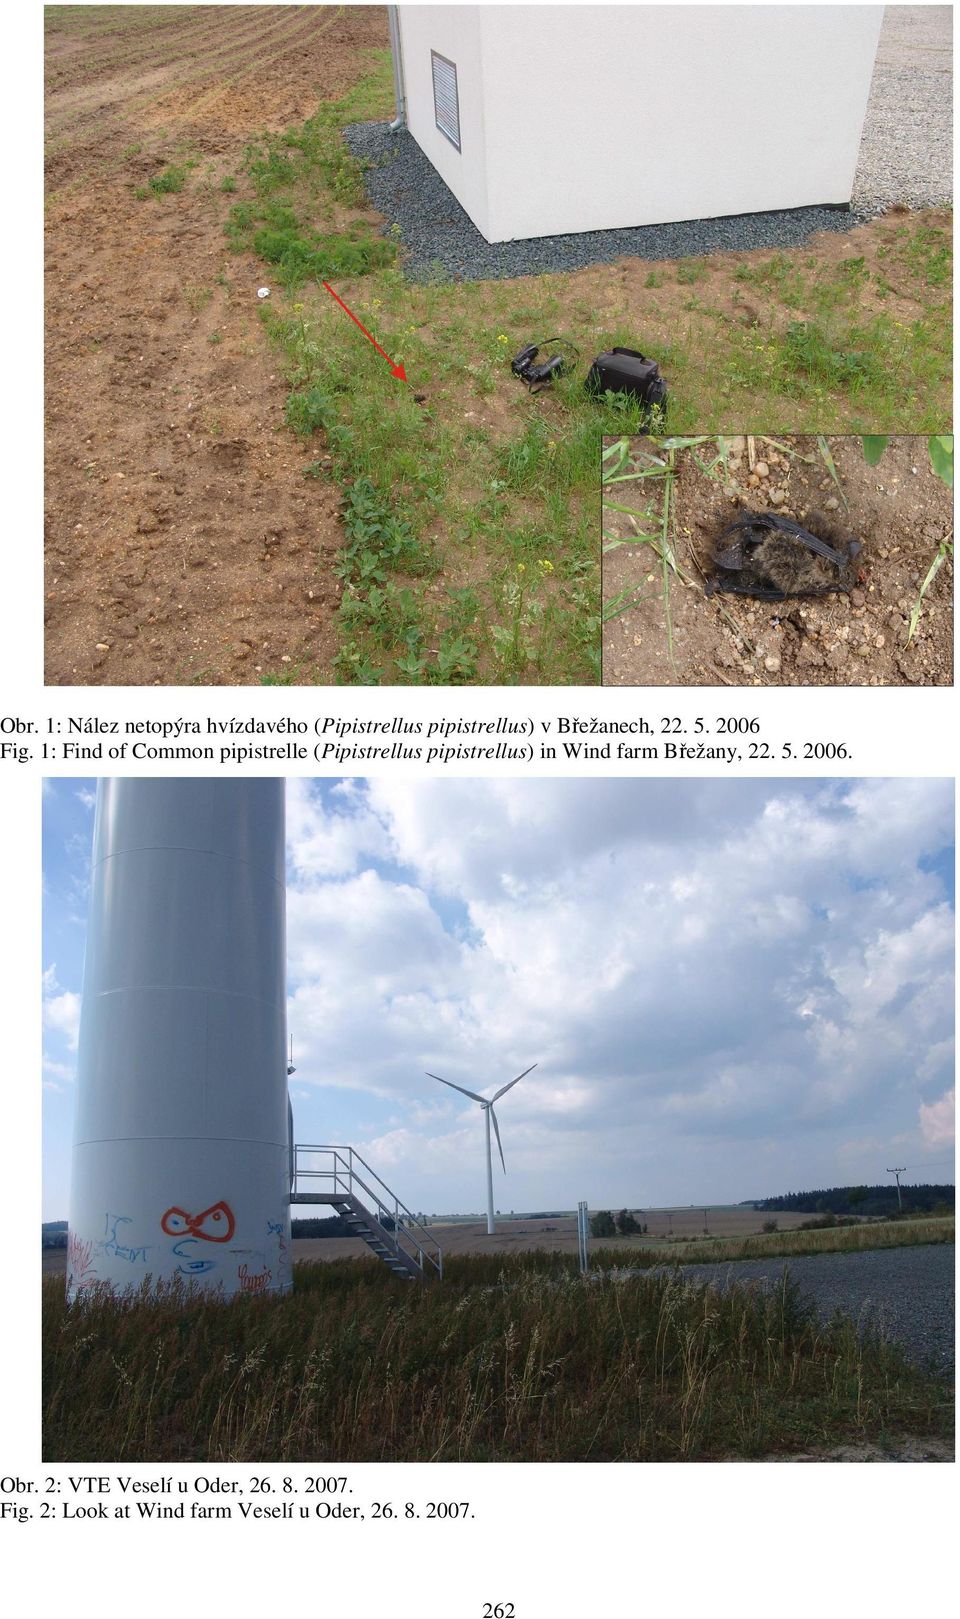 1: Find of Common pipistrelle (Pipistrellus pipistrellus) in Wind farm